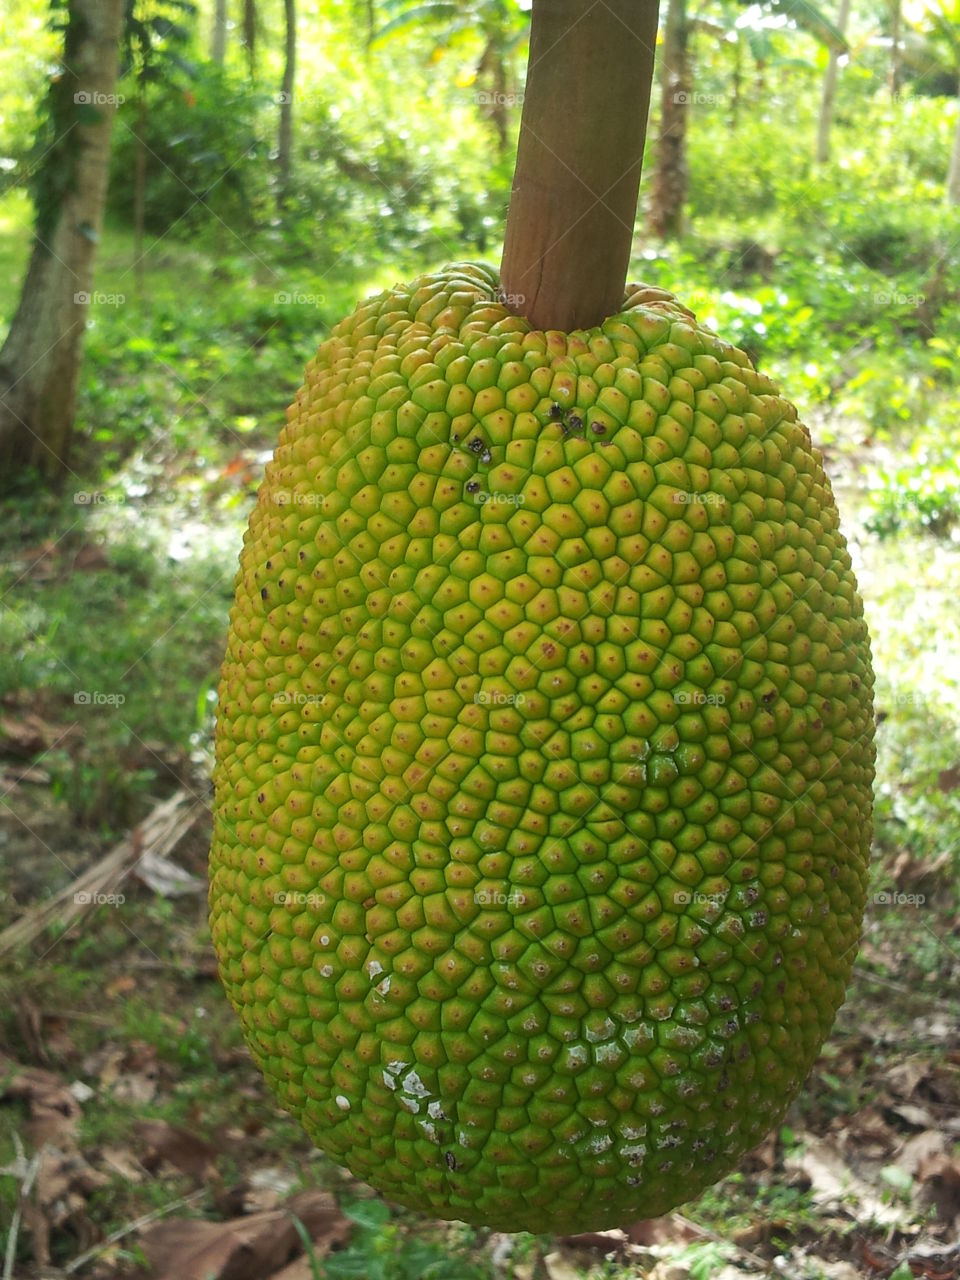 breadfruit (artocarpus communis)